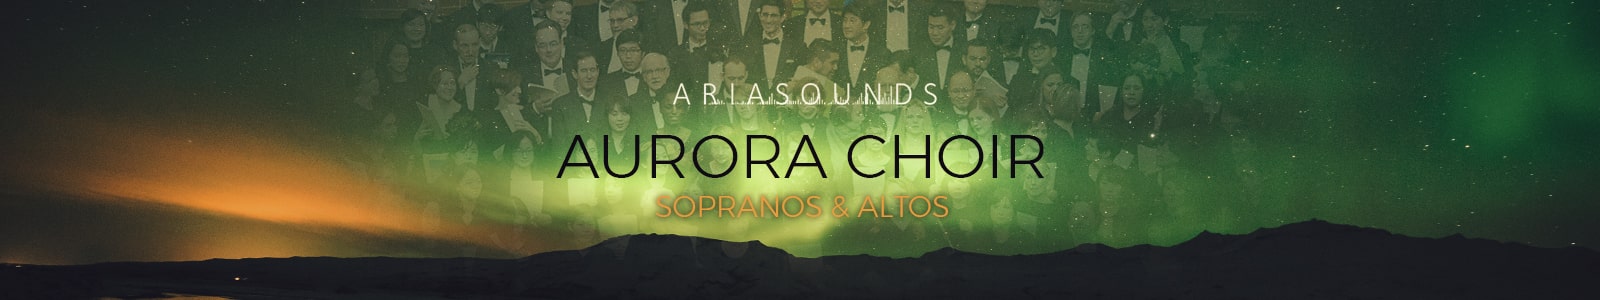 ARIA SOUNDS Aurora Choir